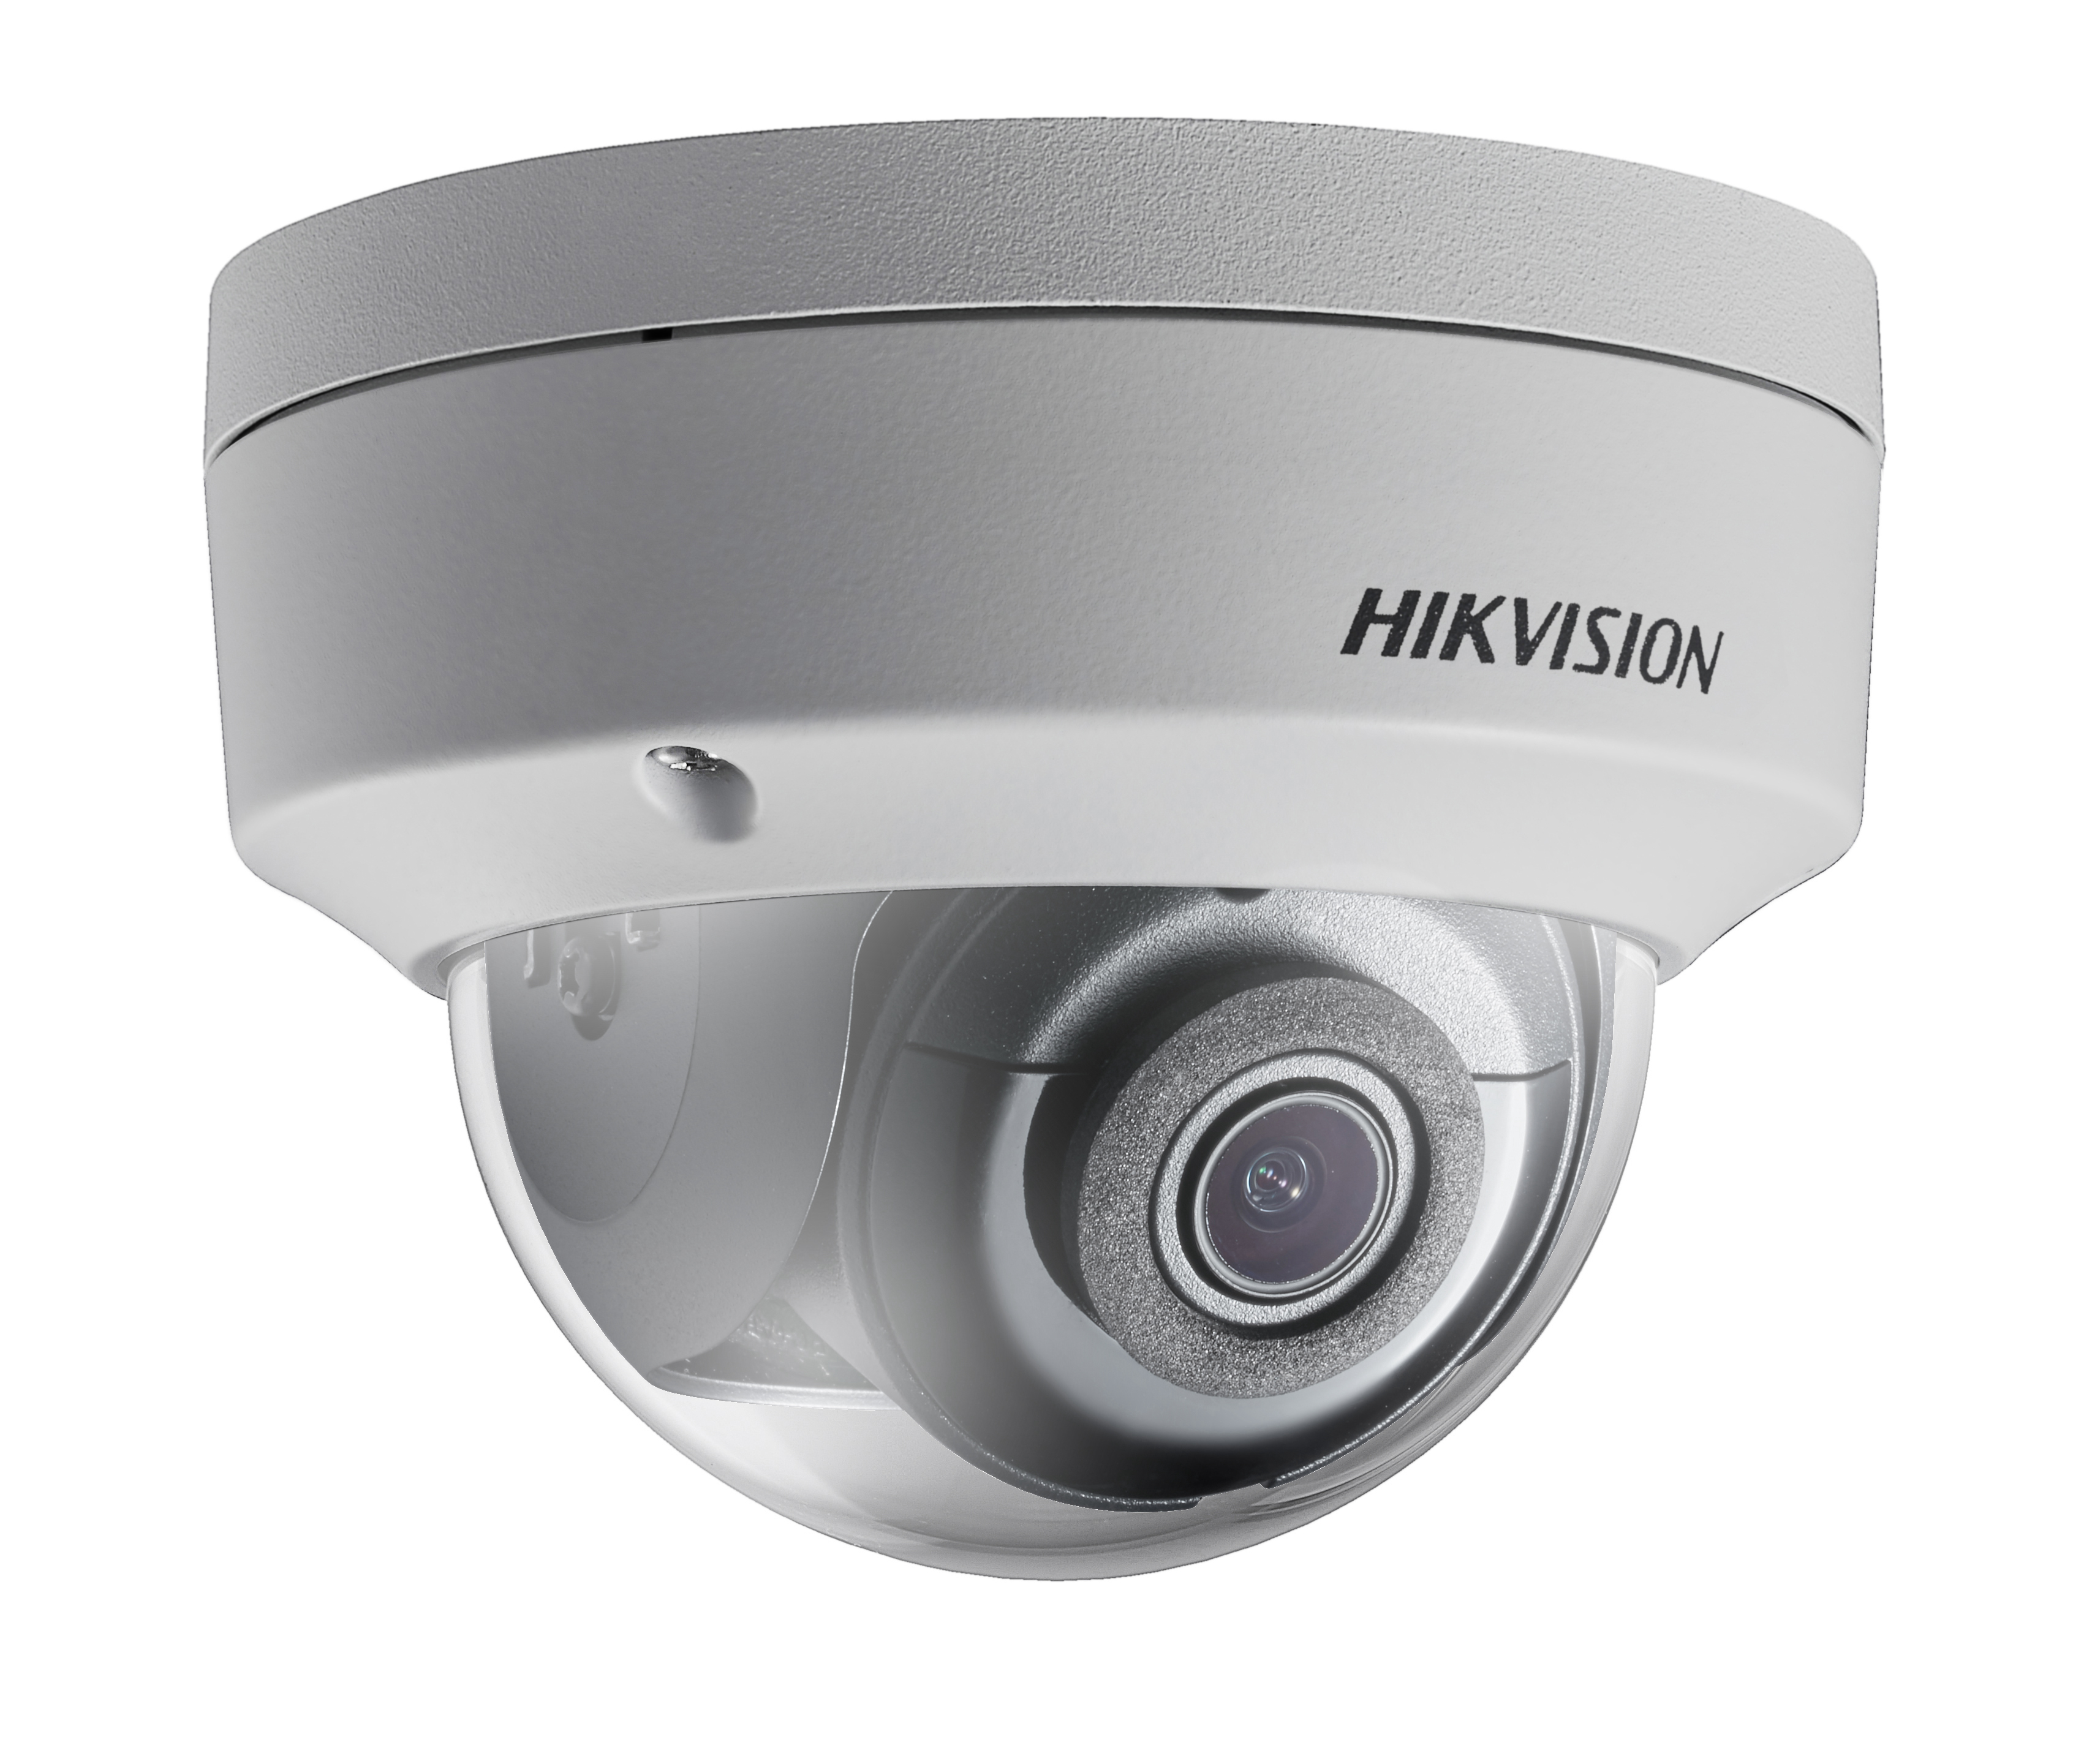 Hikvision DS-2CD2143G0-I 2.8mm